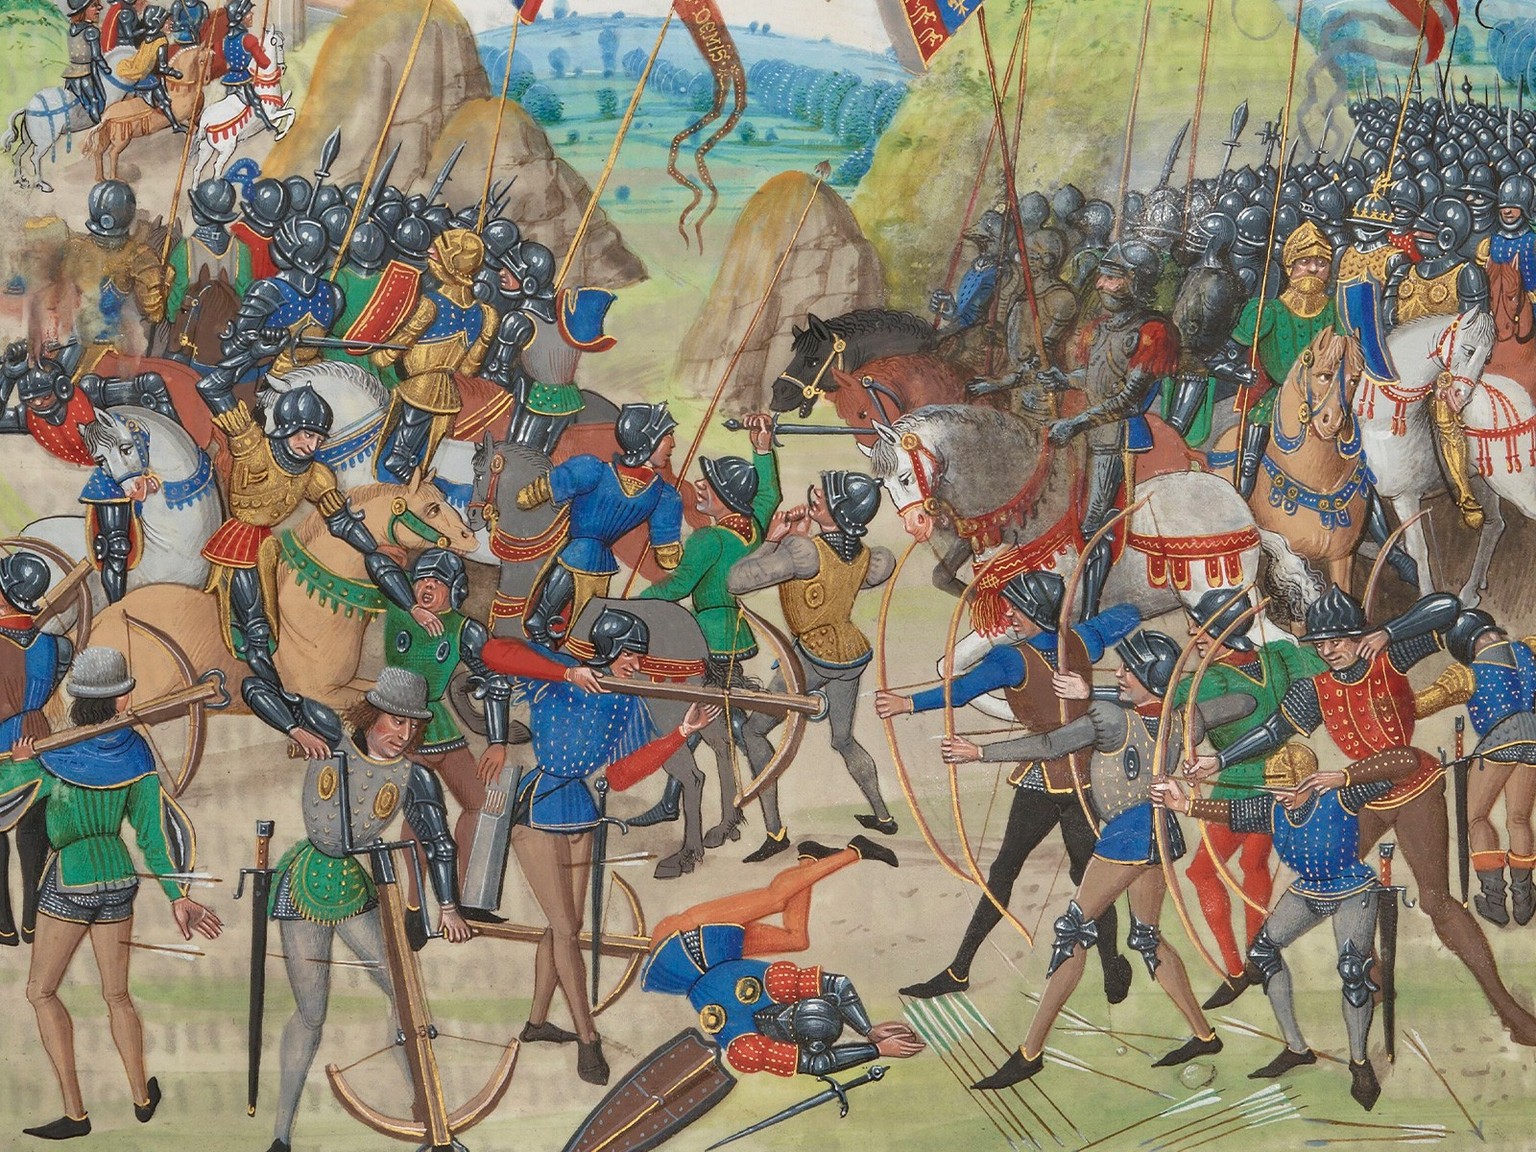 Armbrustschützen in der Schlacht bei Crécy (1346), Illustration aus den «chroniques» von Jean Froissart (1337–1405).
https://gallica.bnf.fr/ark:/12148/btv1b84386043/f354.item.r=FR%202643.zoom